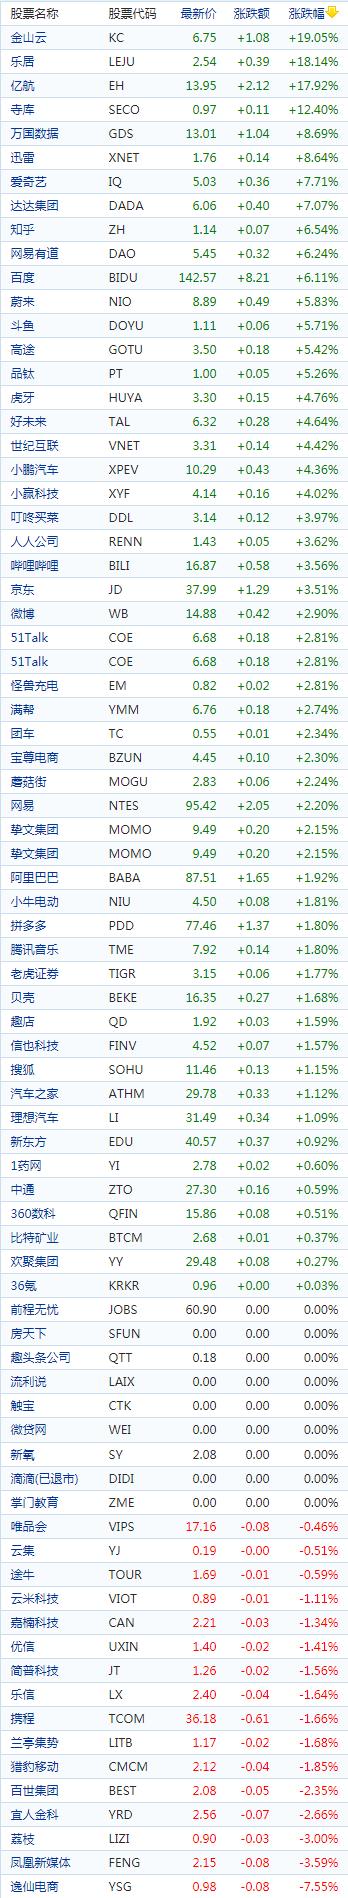 中国概念股收盘：金山云飙涨逾19%、爱奇艺涨近8%，每日优鲜跌超9%